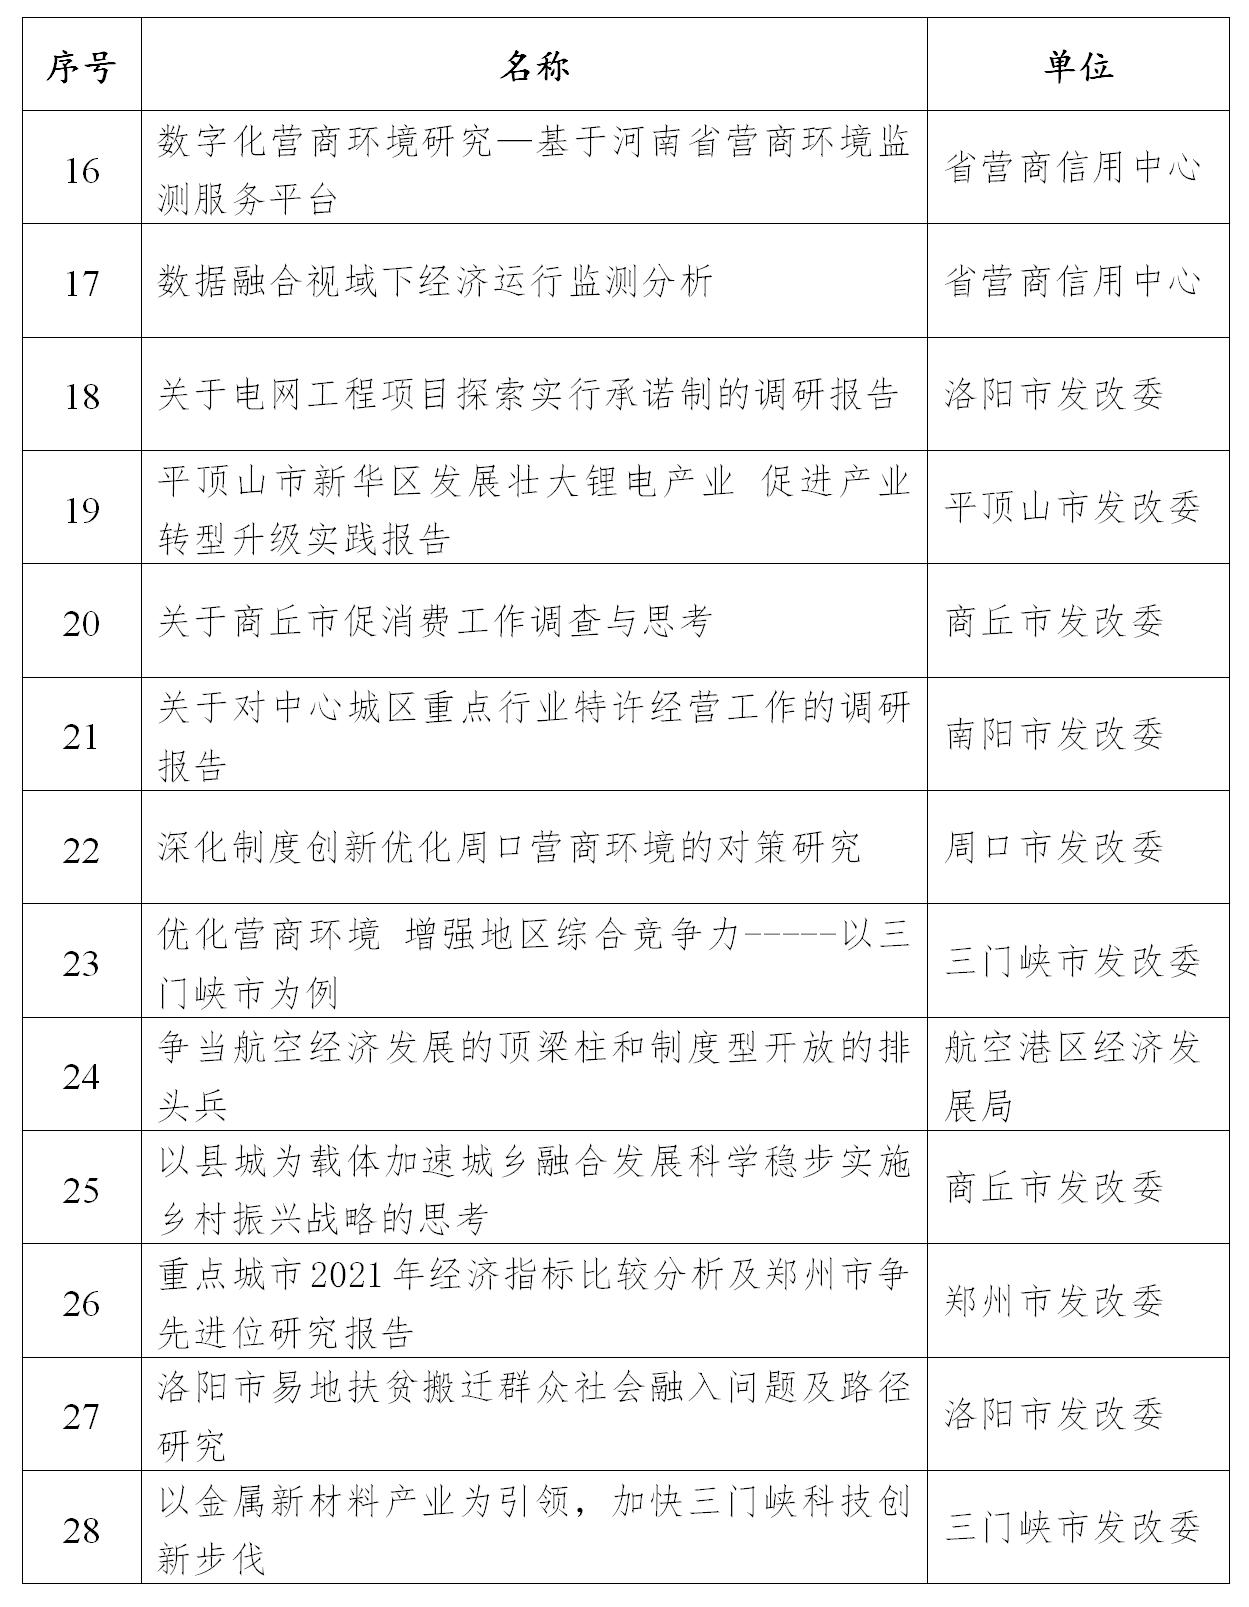 关于2022年度河南省发展改革系统优秀研究成果获奖名单的公示